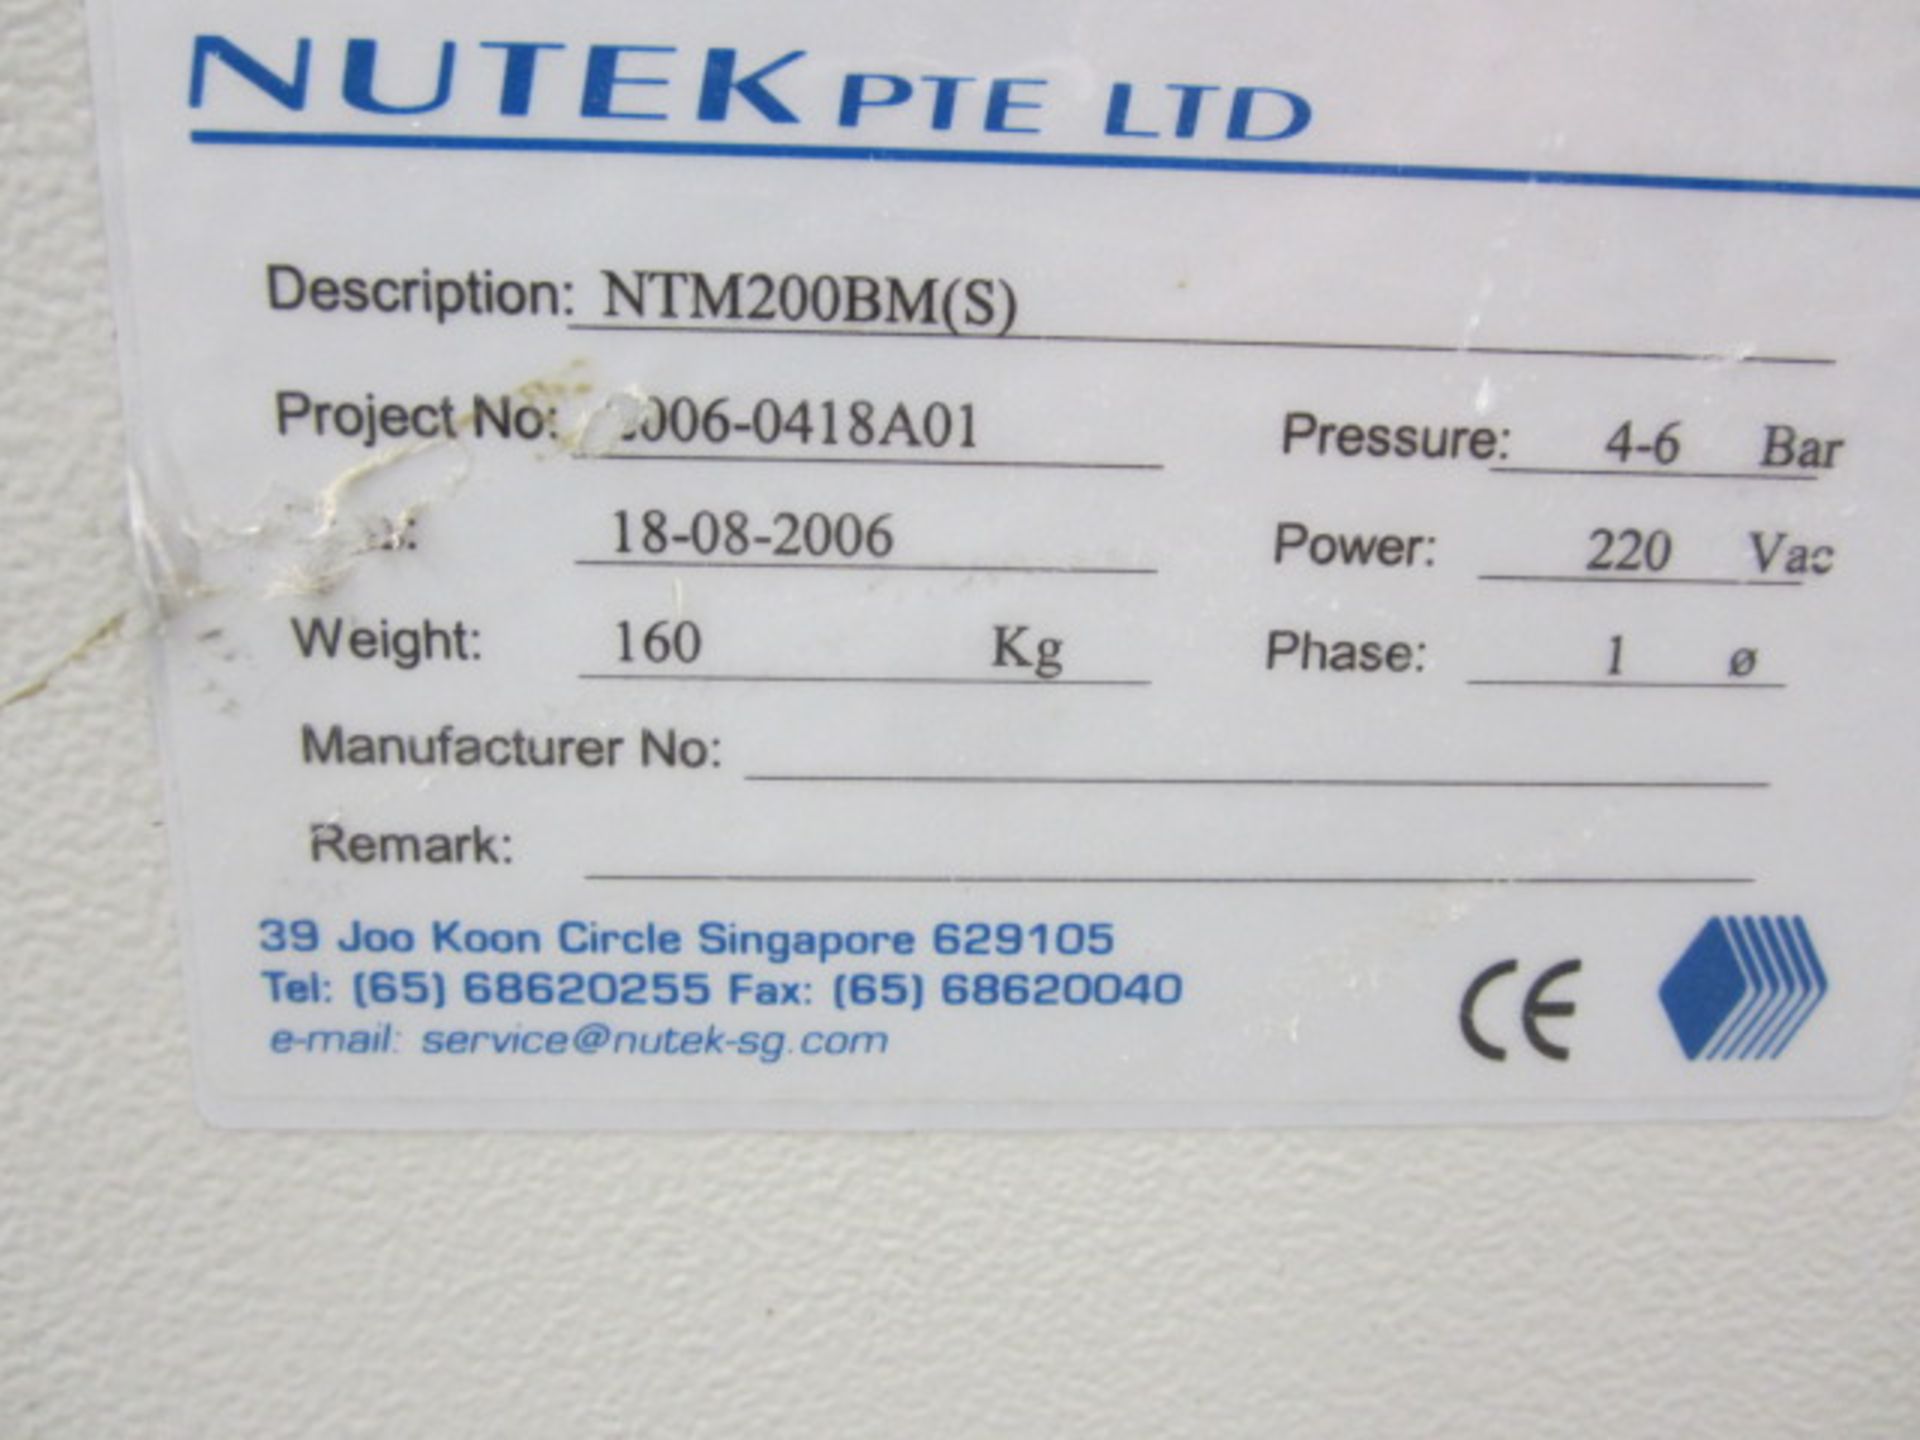 Nutek PTE Ltd PCB board Loader/Unloader, model no: NTN200BM, serial no: 2006-C418A01 (2006). - Image 3 of 4